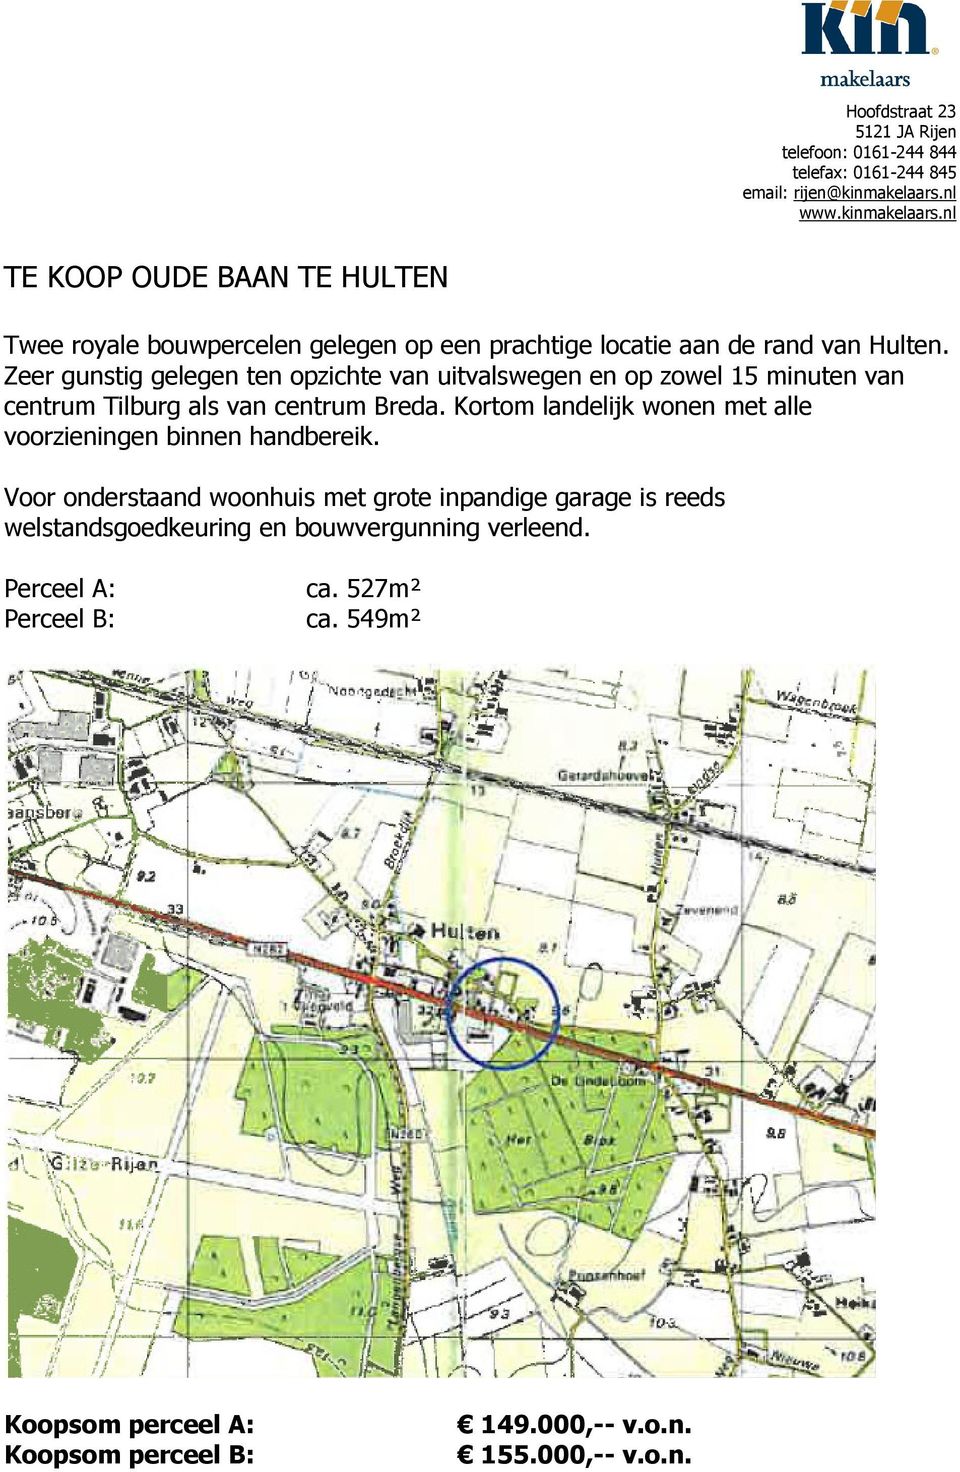 Zeer gunstig gelegen ten opzichte van uitvalswegen en op zowel 15 minuten van centrum Tilburg als van centrum Breda.